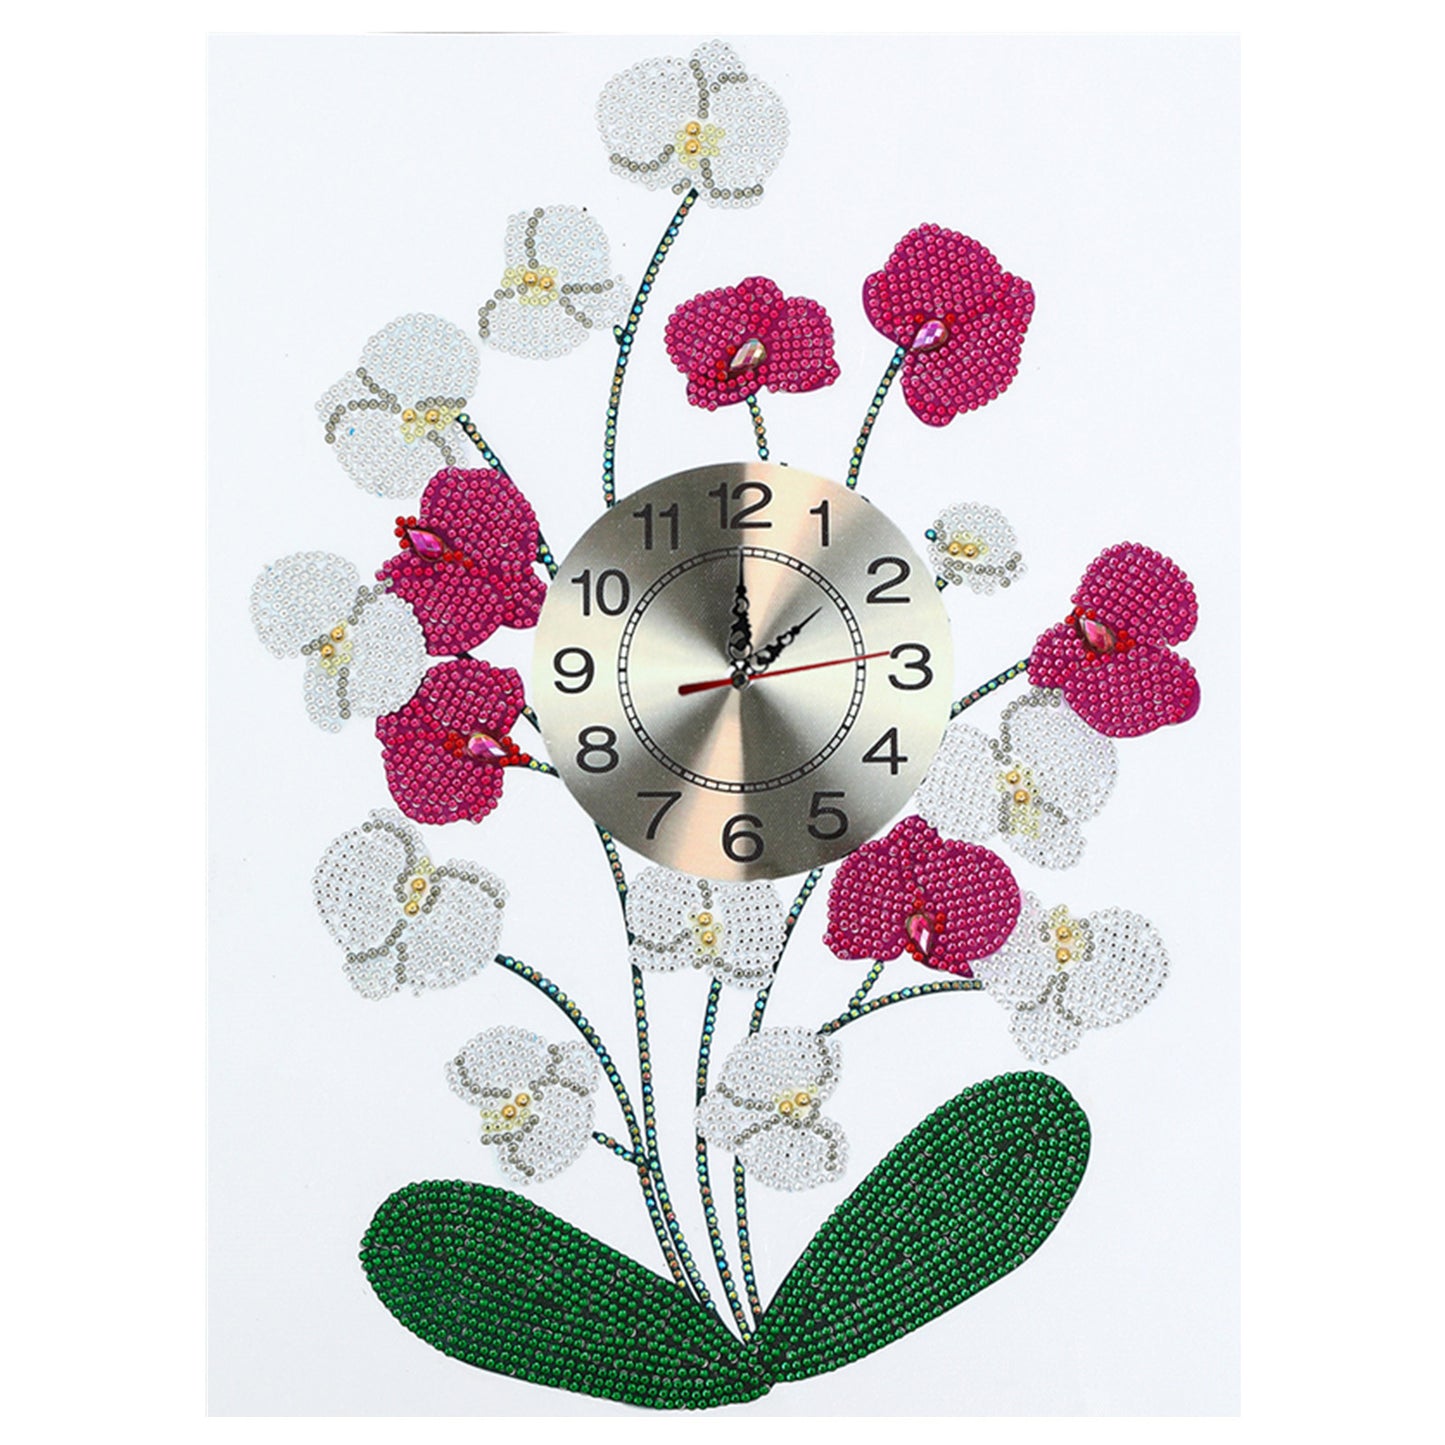 Horloge fleurie | Kits de peinture au diamant de forme spéciale 